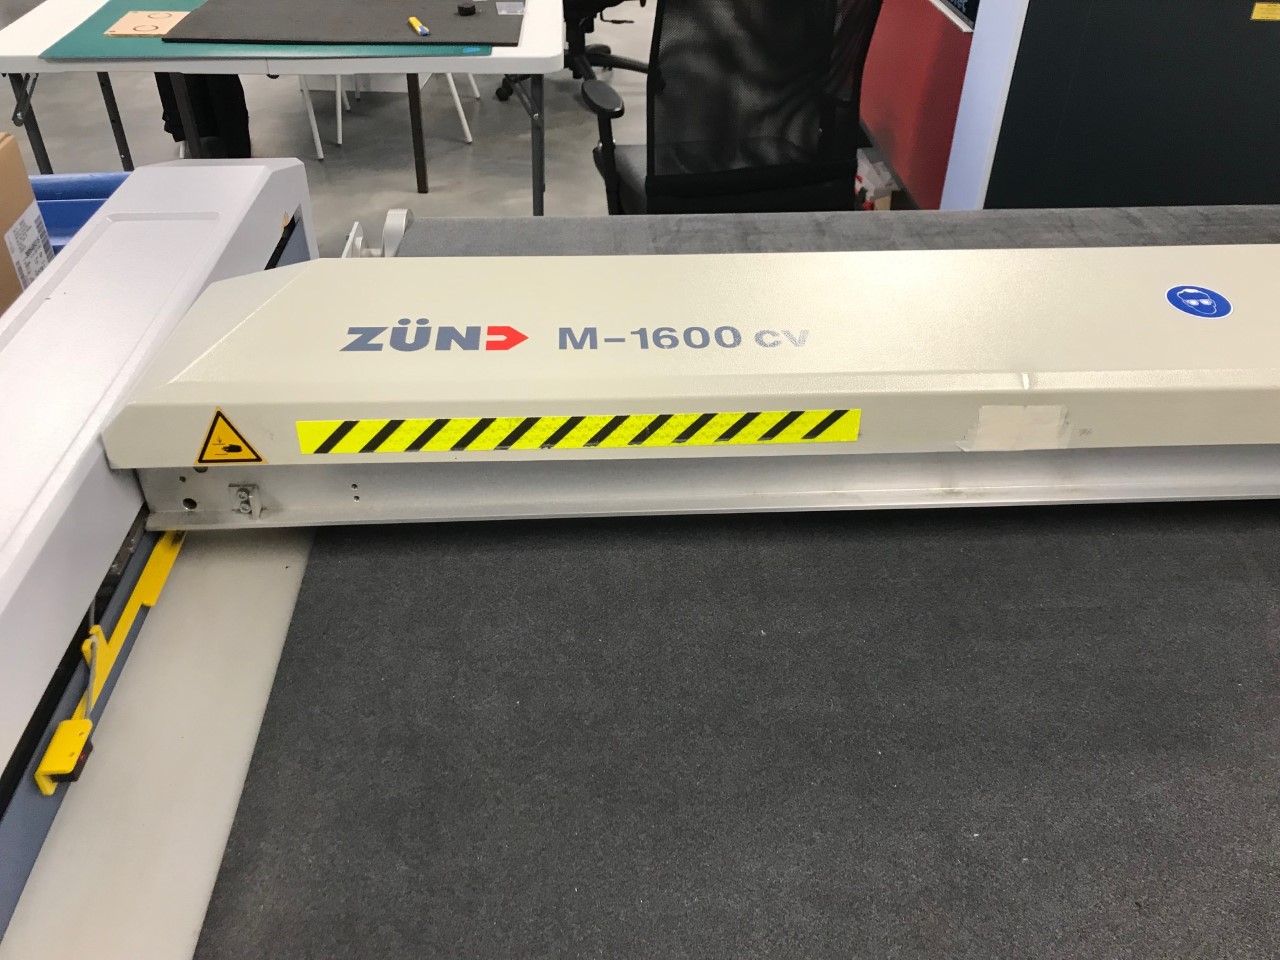 Zund M1600 / M-1600 CV Flatbed Cutter w/ Conveyor (Used) Item # UE-022123E